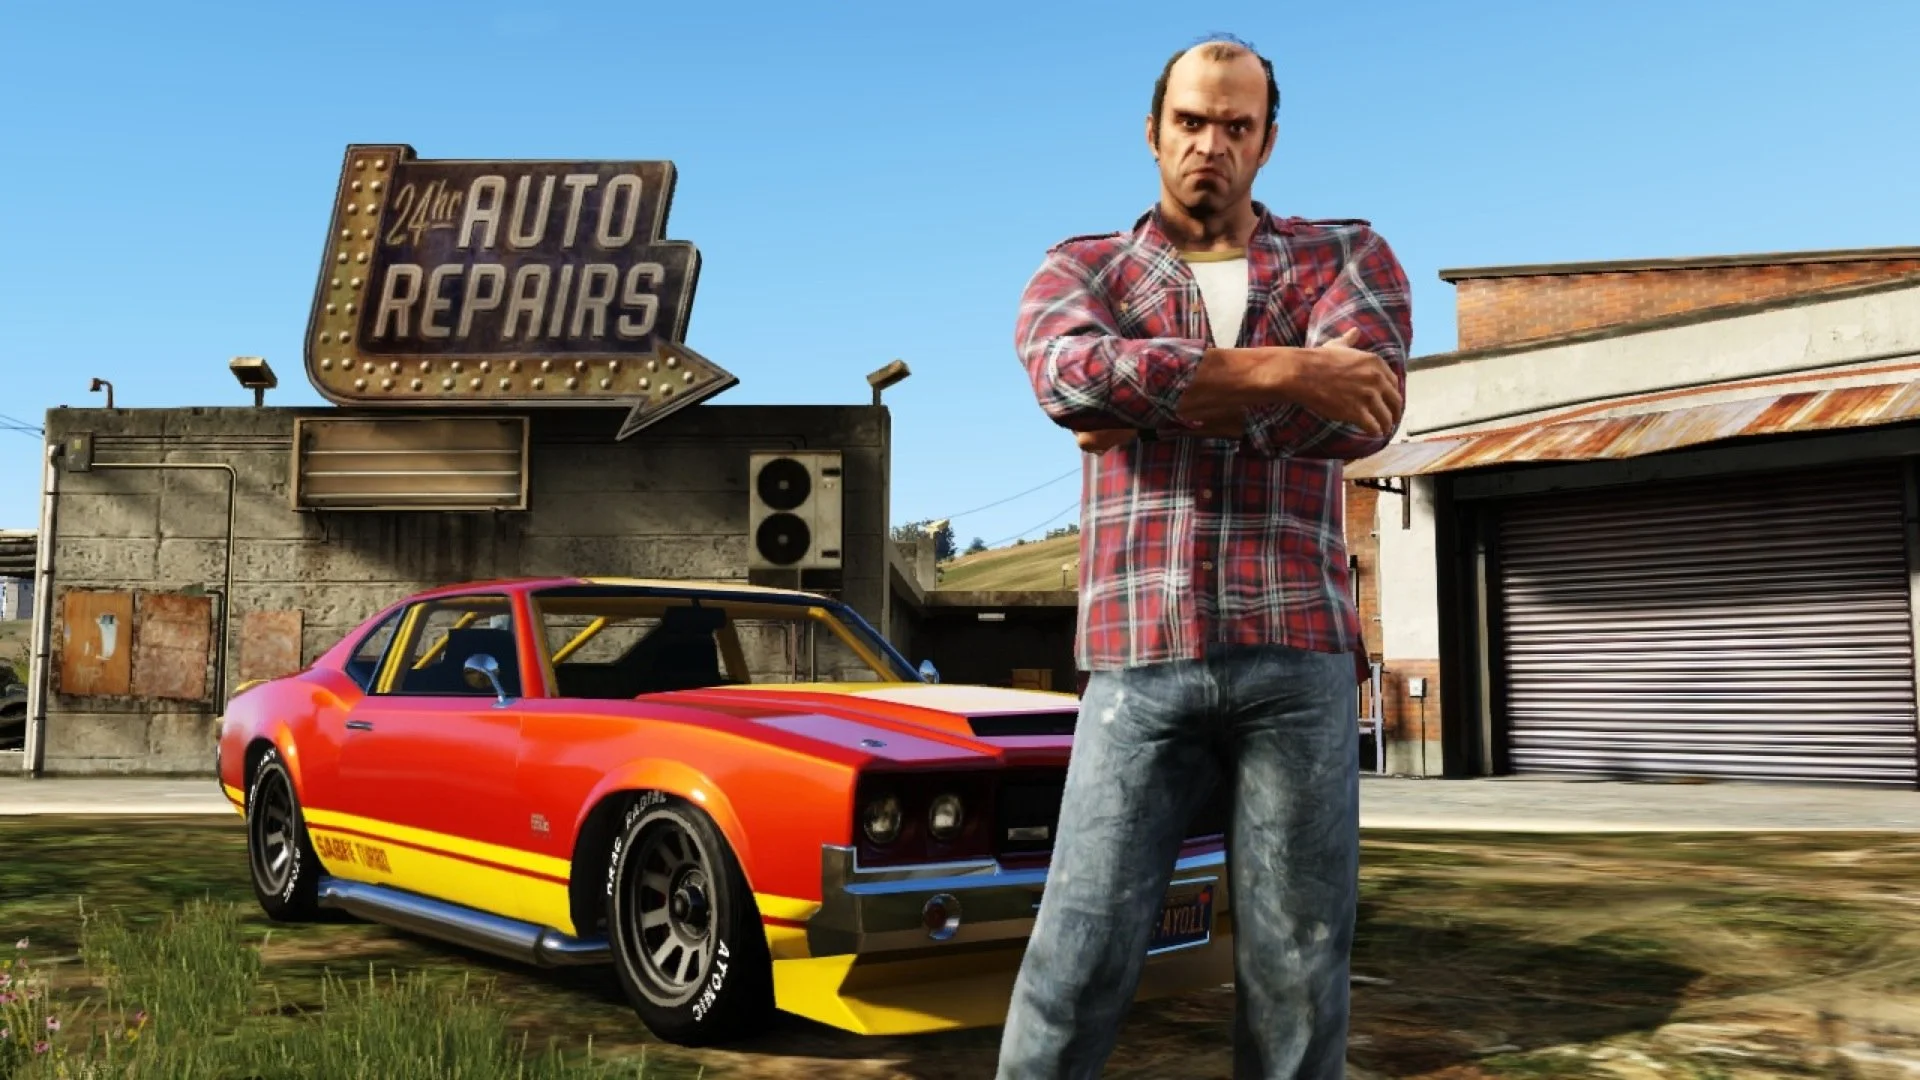 Rockstar придерживает отправку игры GTA 5 до 16 сентября - изображение обложка